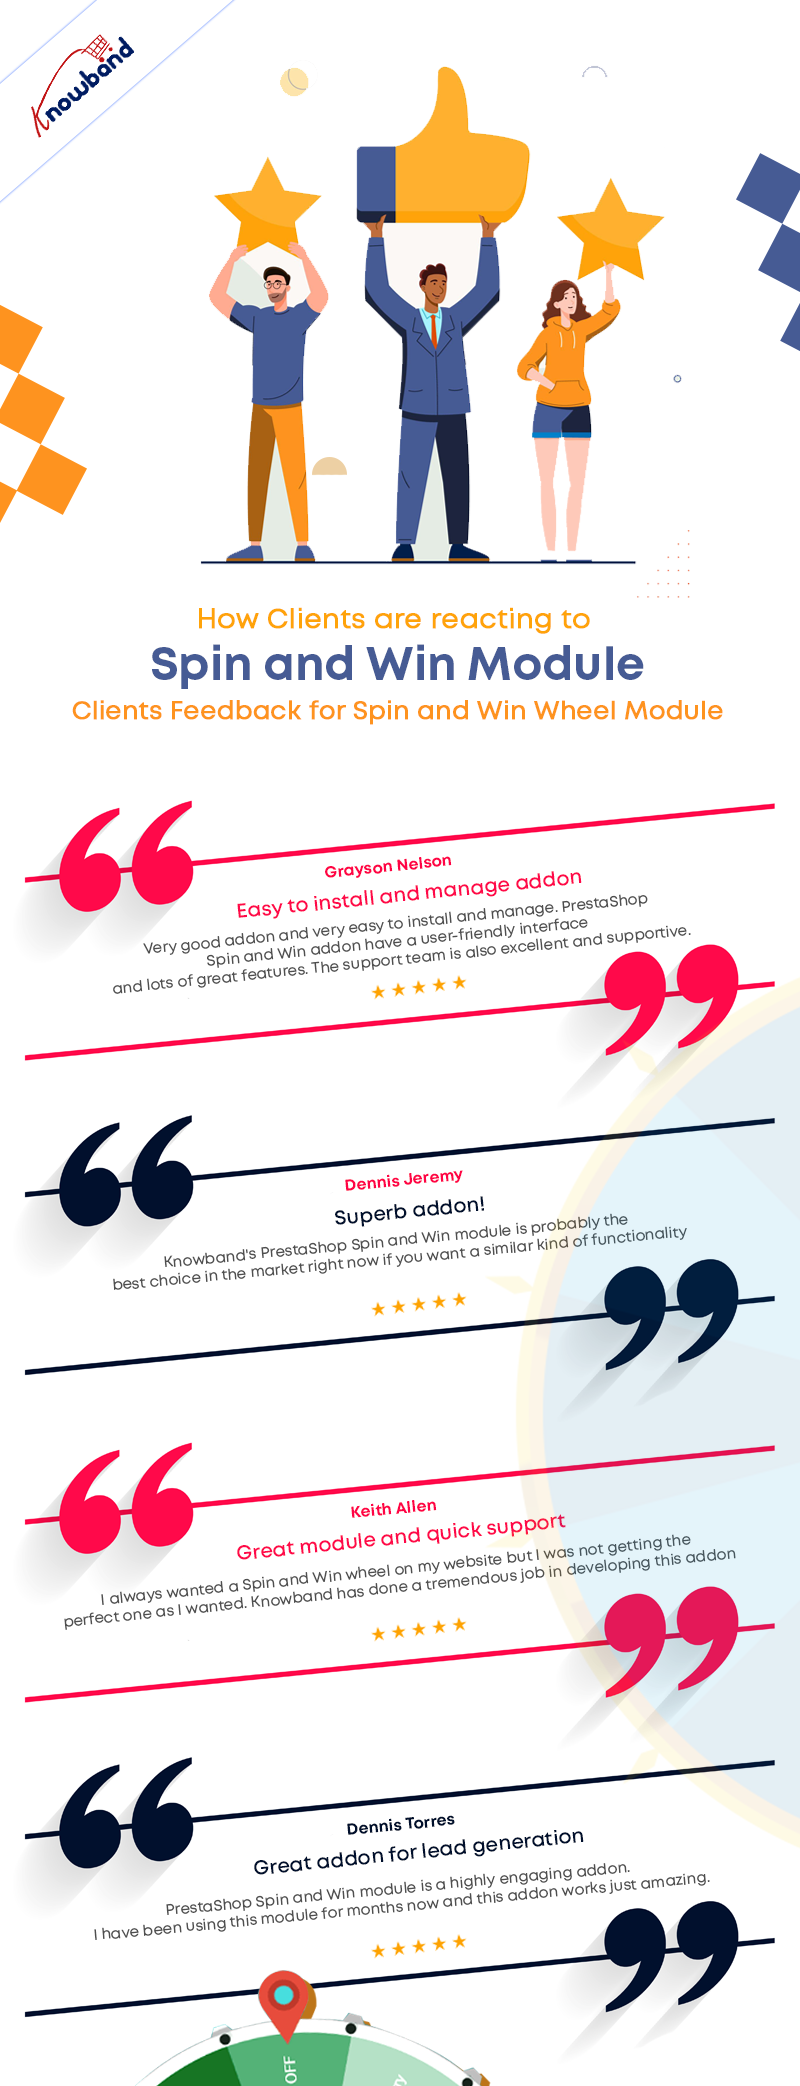 clientes-feedback-para-spin-and-win-wheel-module